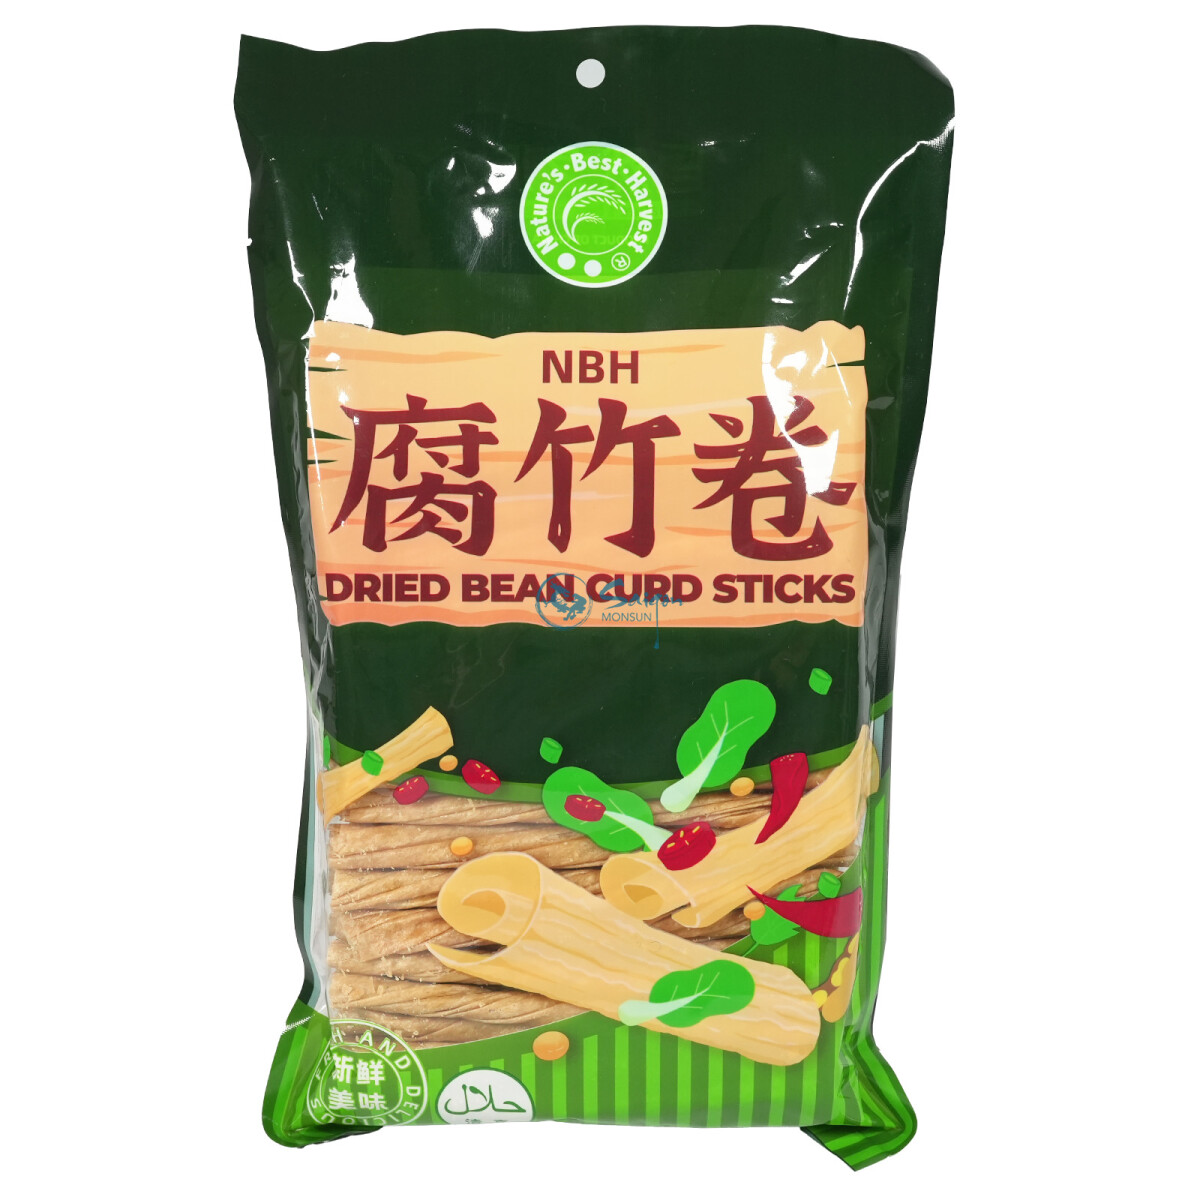 NBH Dried Bean Curd Sticks Tofuhaut 5x300g